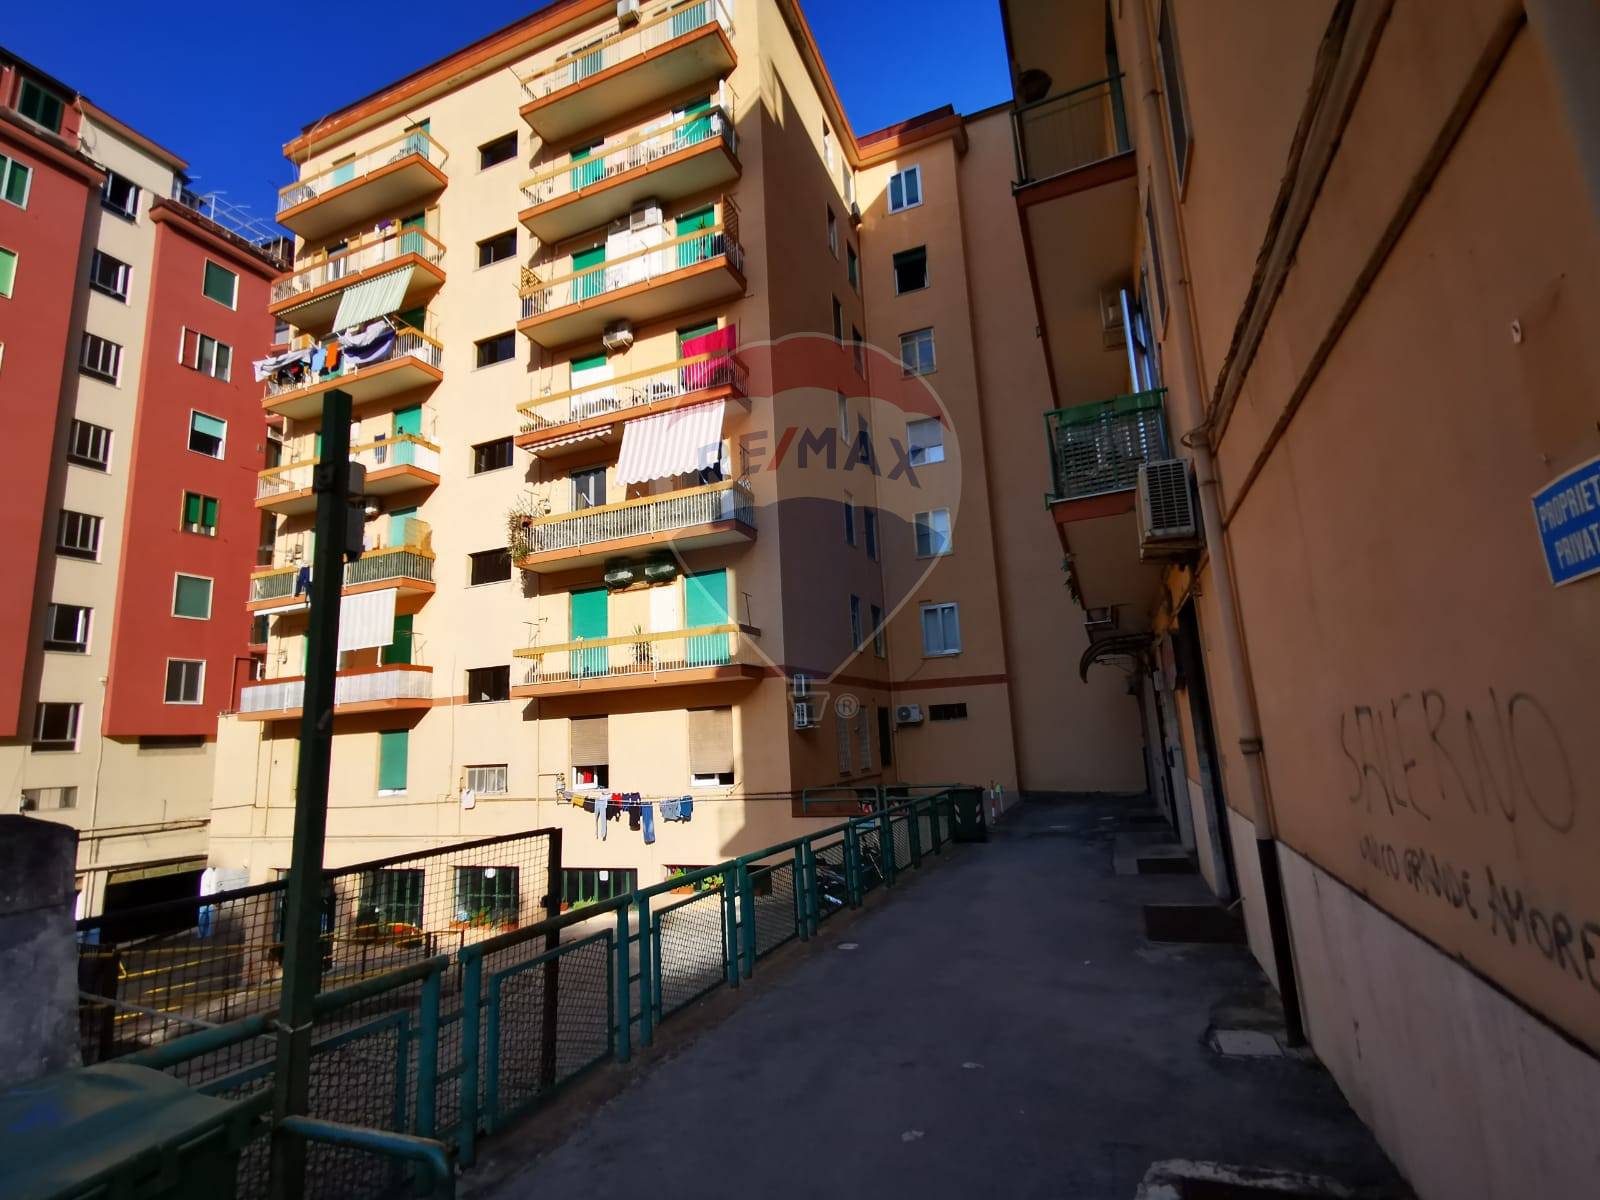 Negozio / Locale in vendita a Salerno, 9999 locali, zona Zona: Torrione, prezzo € 45.000 | CambioCasa.it